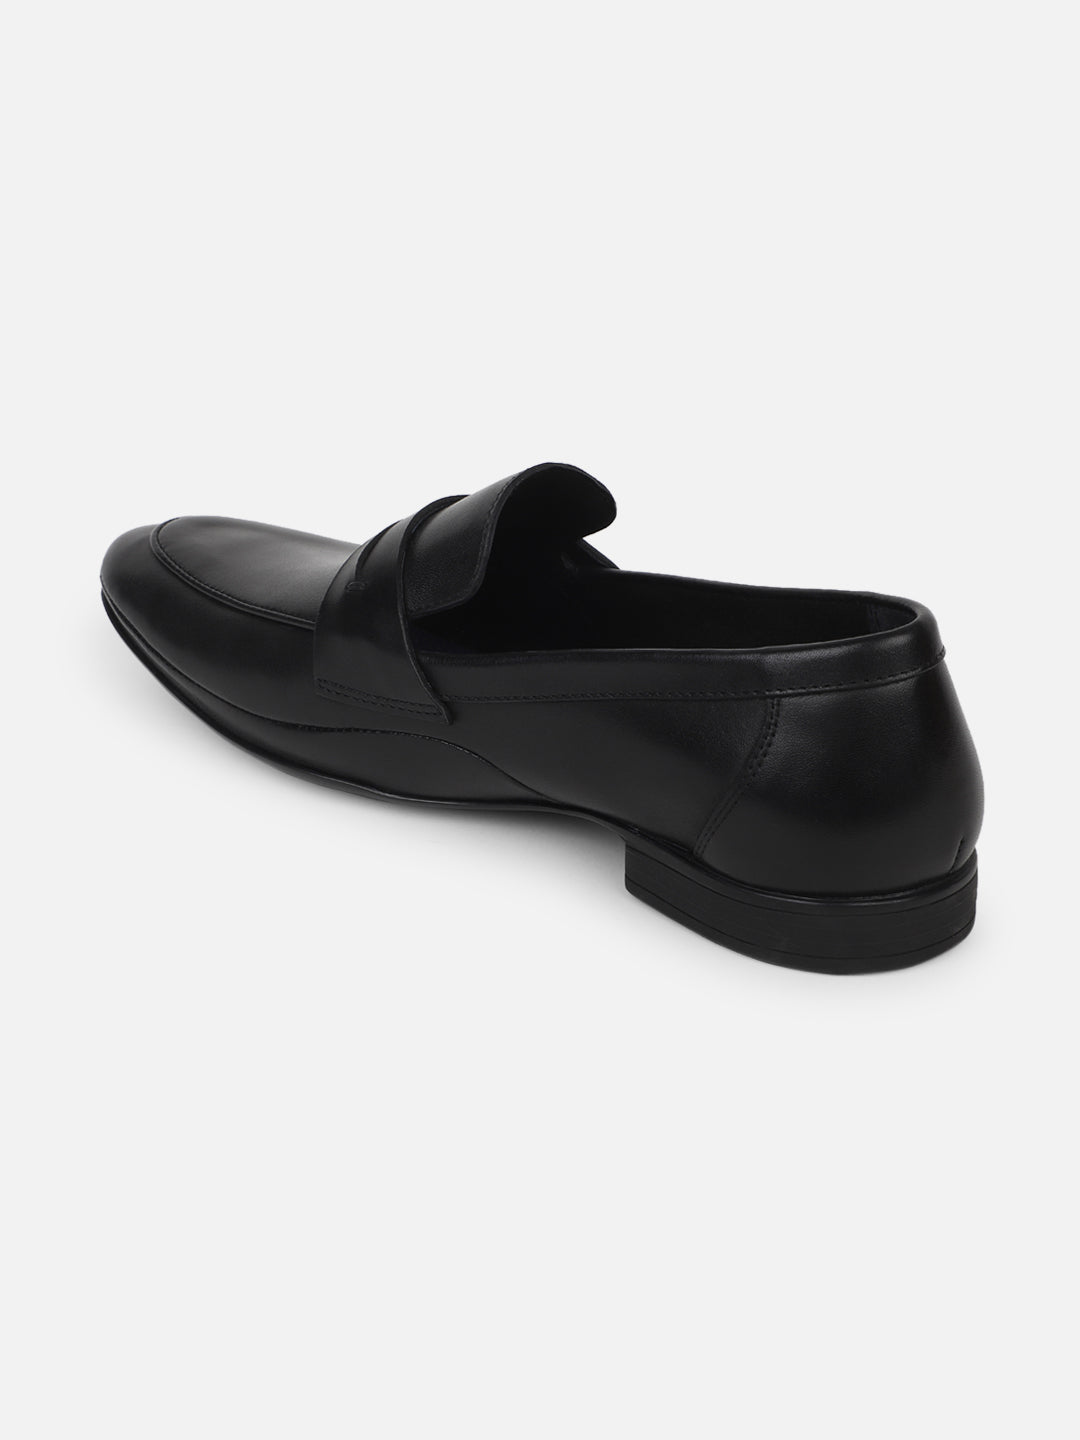 Ezok Men Leather Loafer Mocassins ( Black )